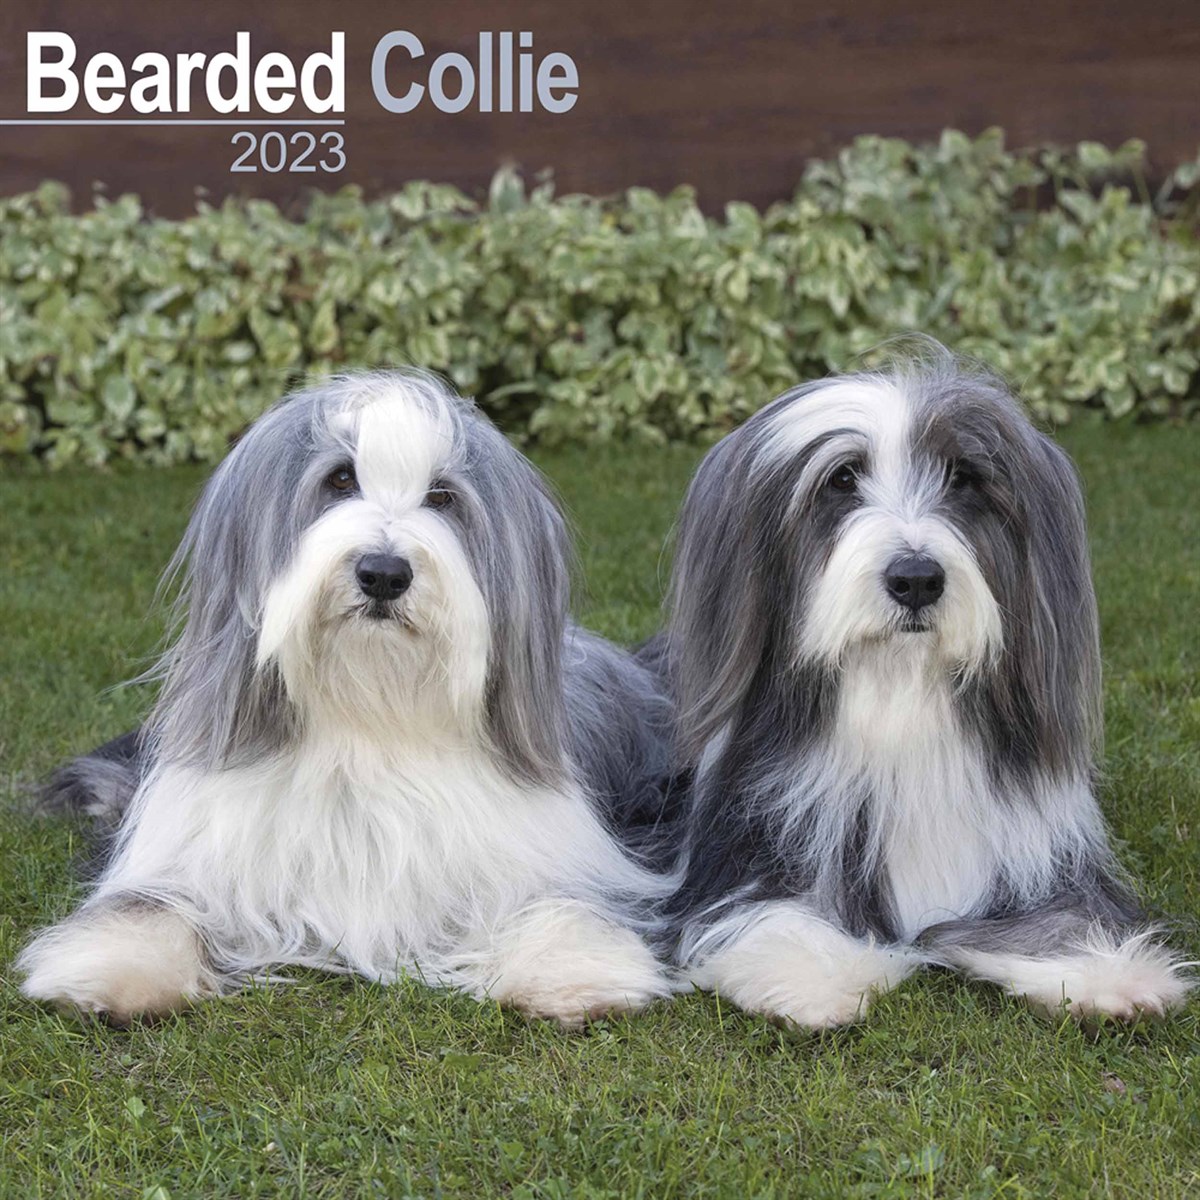 Bearded Collie 2023 Calendars